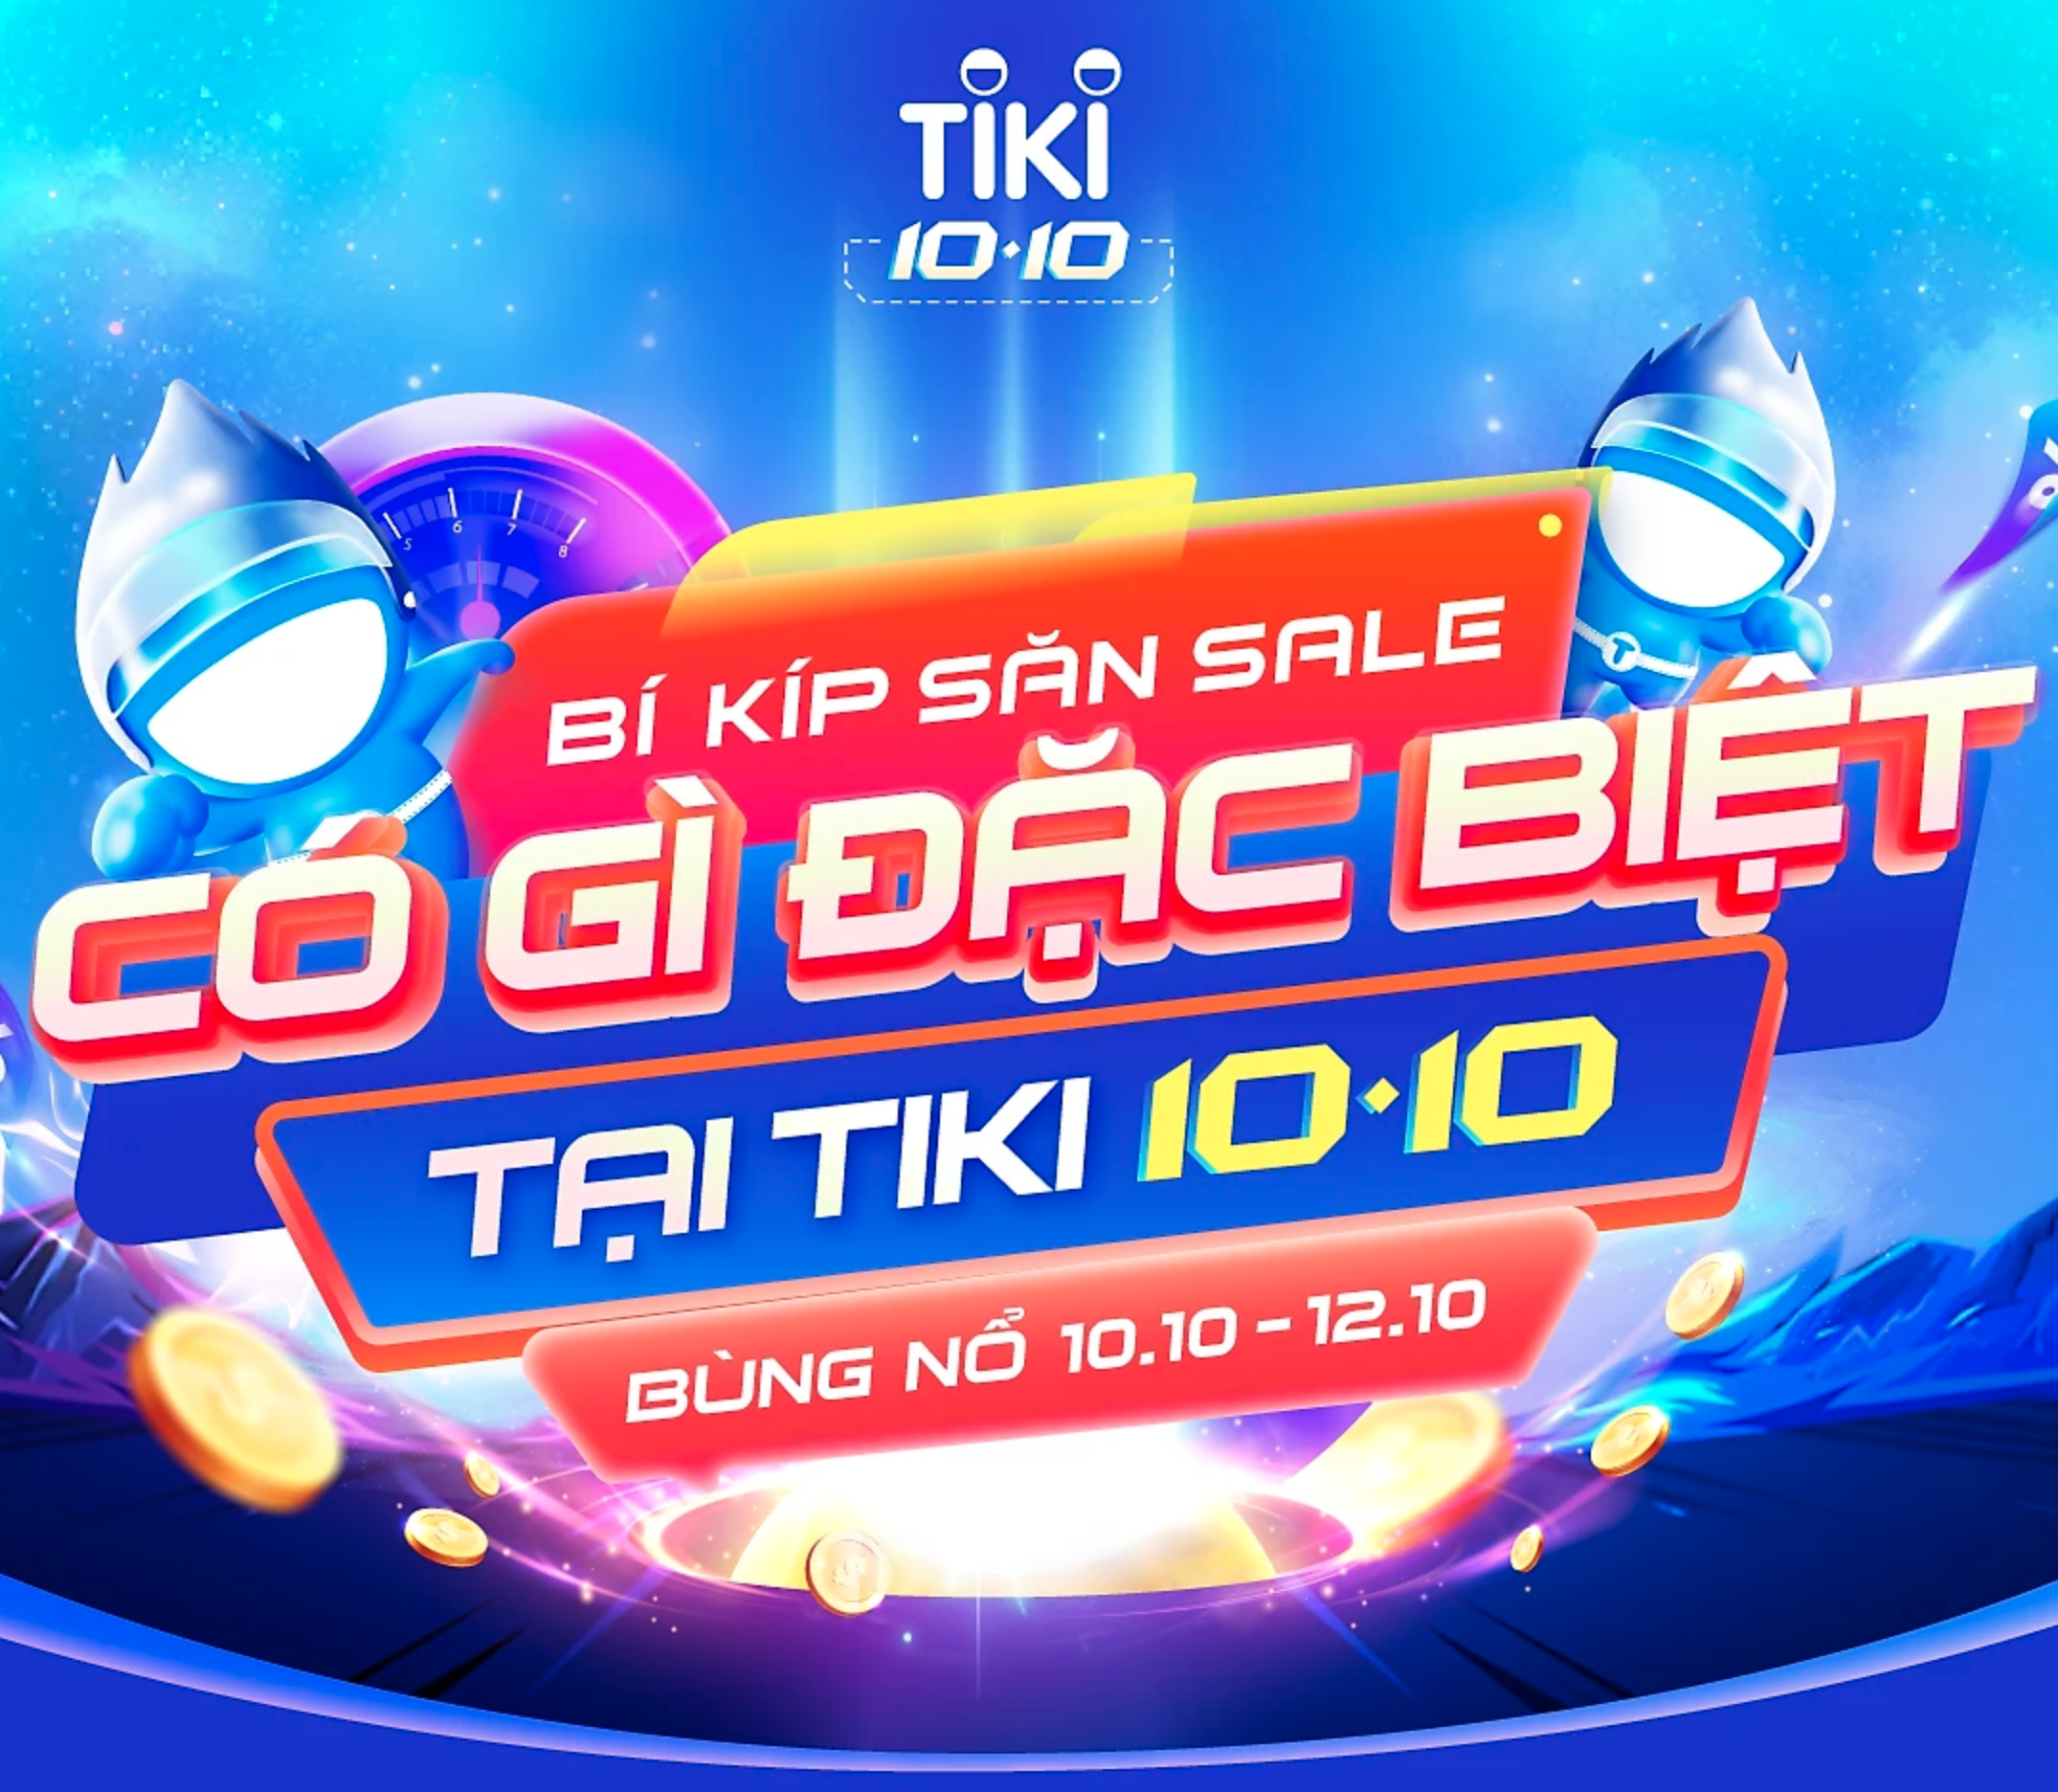 CODE ĐỘC QUYỀN TIKI,  Giảm 35k cho đơn hàng từ 570k - Áp dụng cho tất cả nghành hàng trừ Tiki Trading